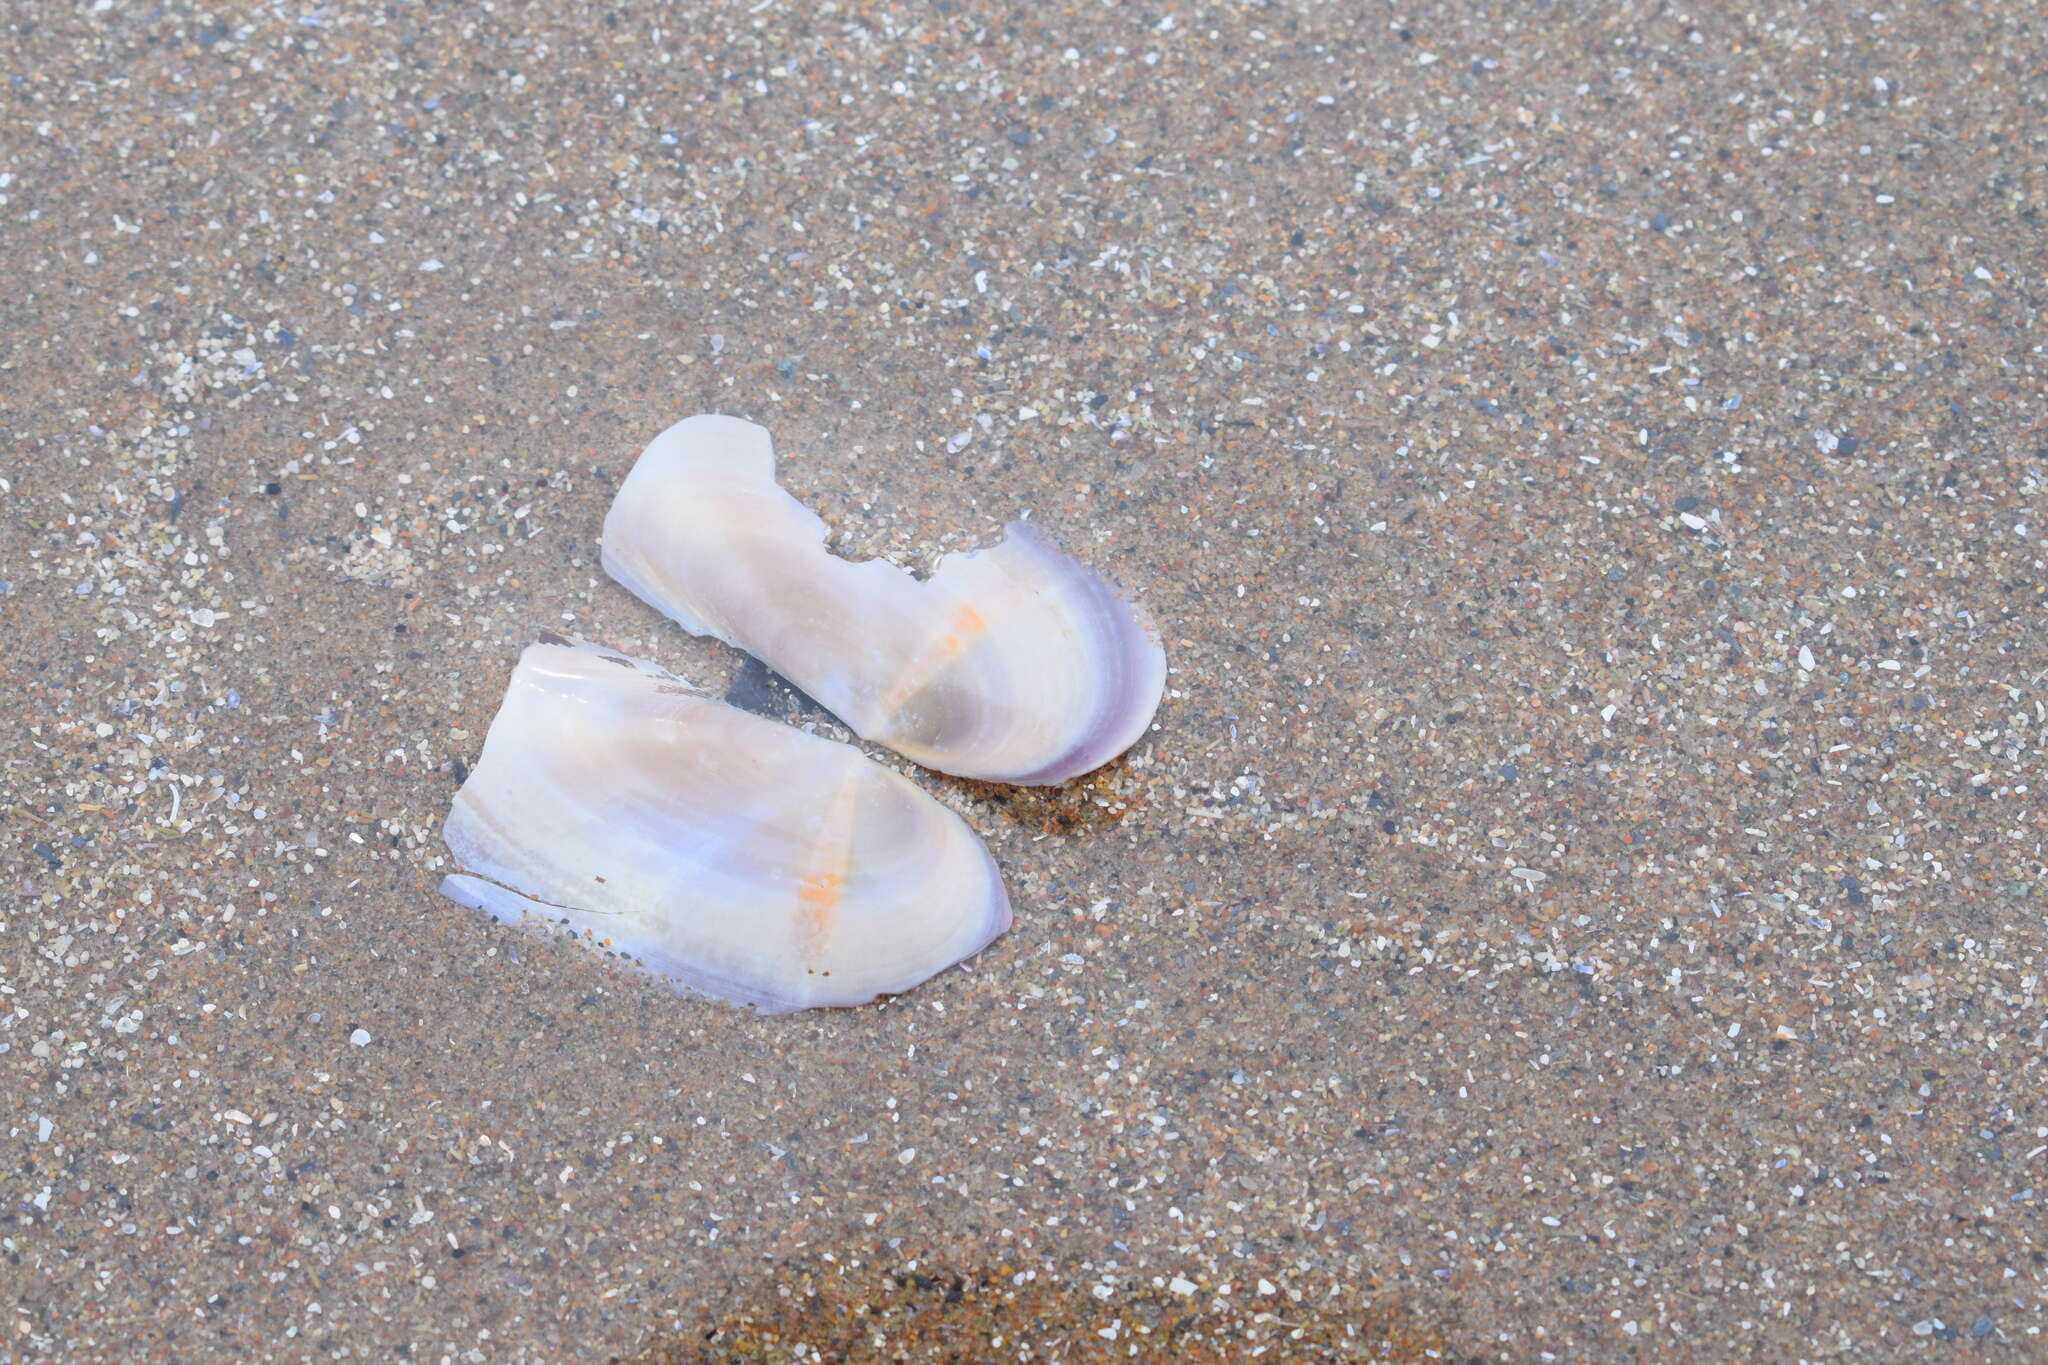 Image of Atlantic razor clam